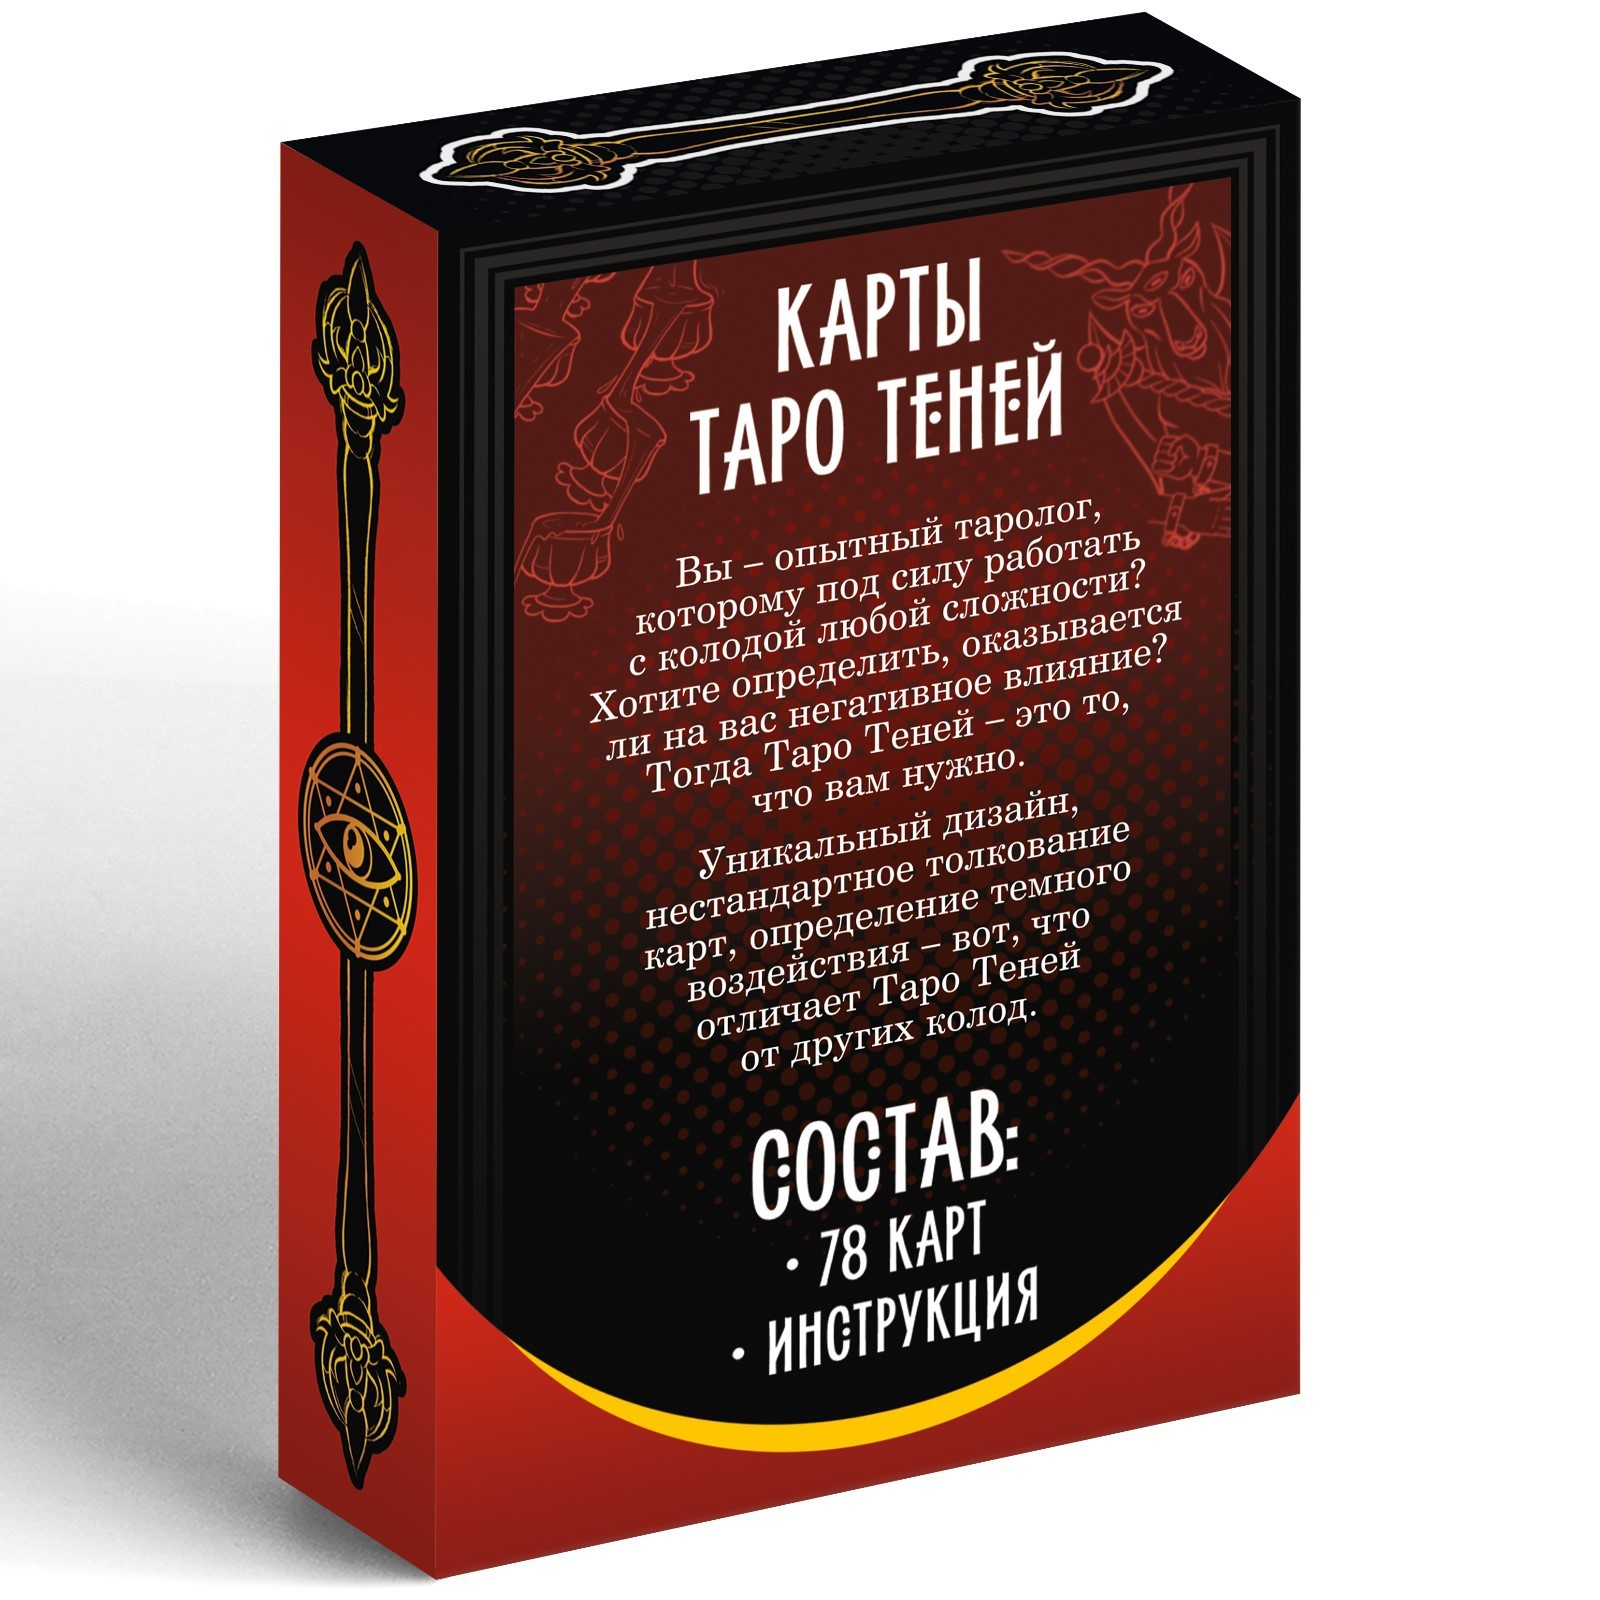 Купить Карты Таро «Колода теней», 78 карт, 16+ (4550991) в Крыму, цены,отзывы, характеристики